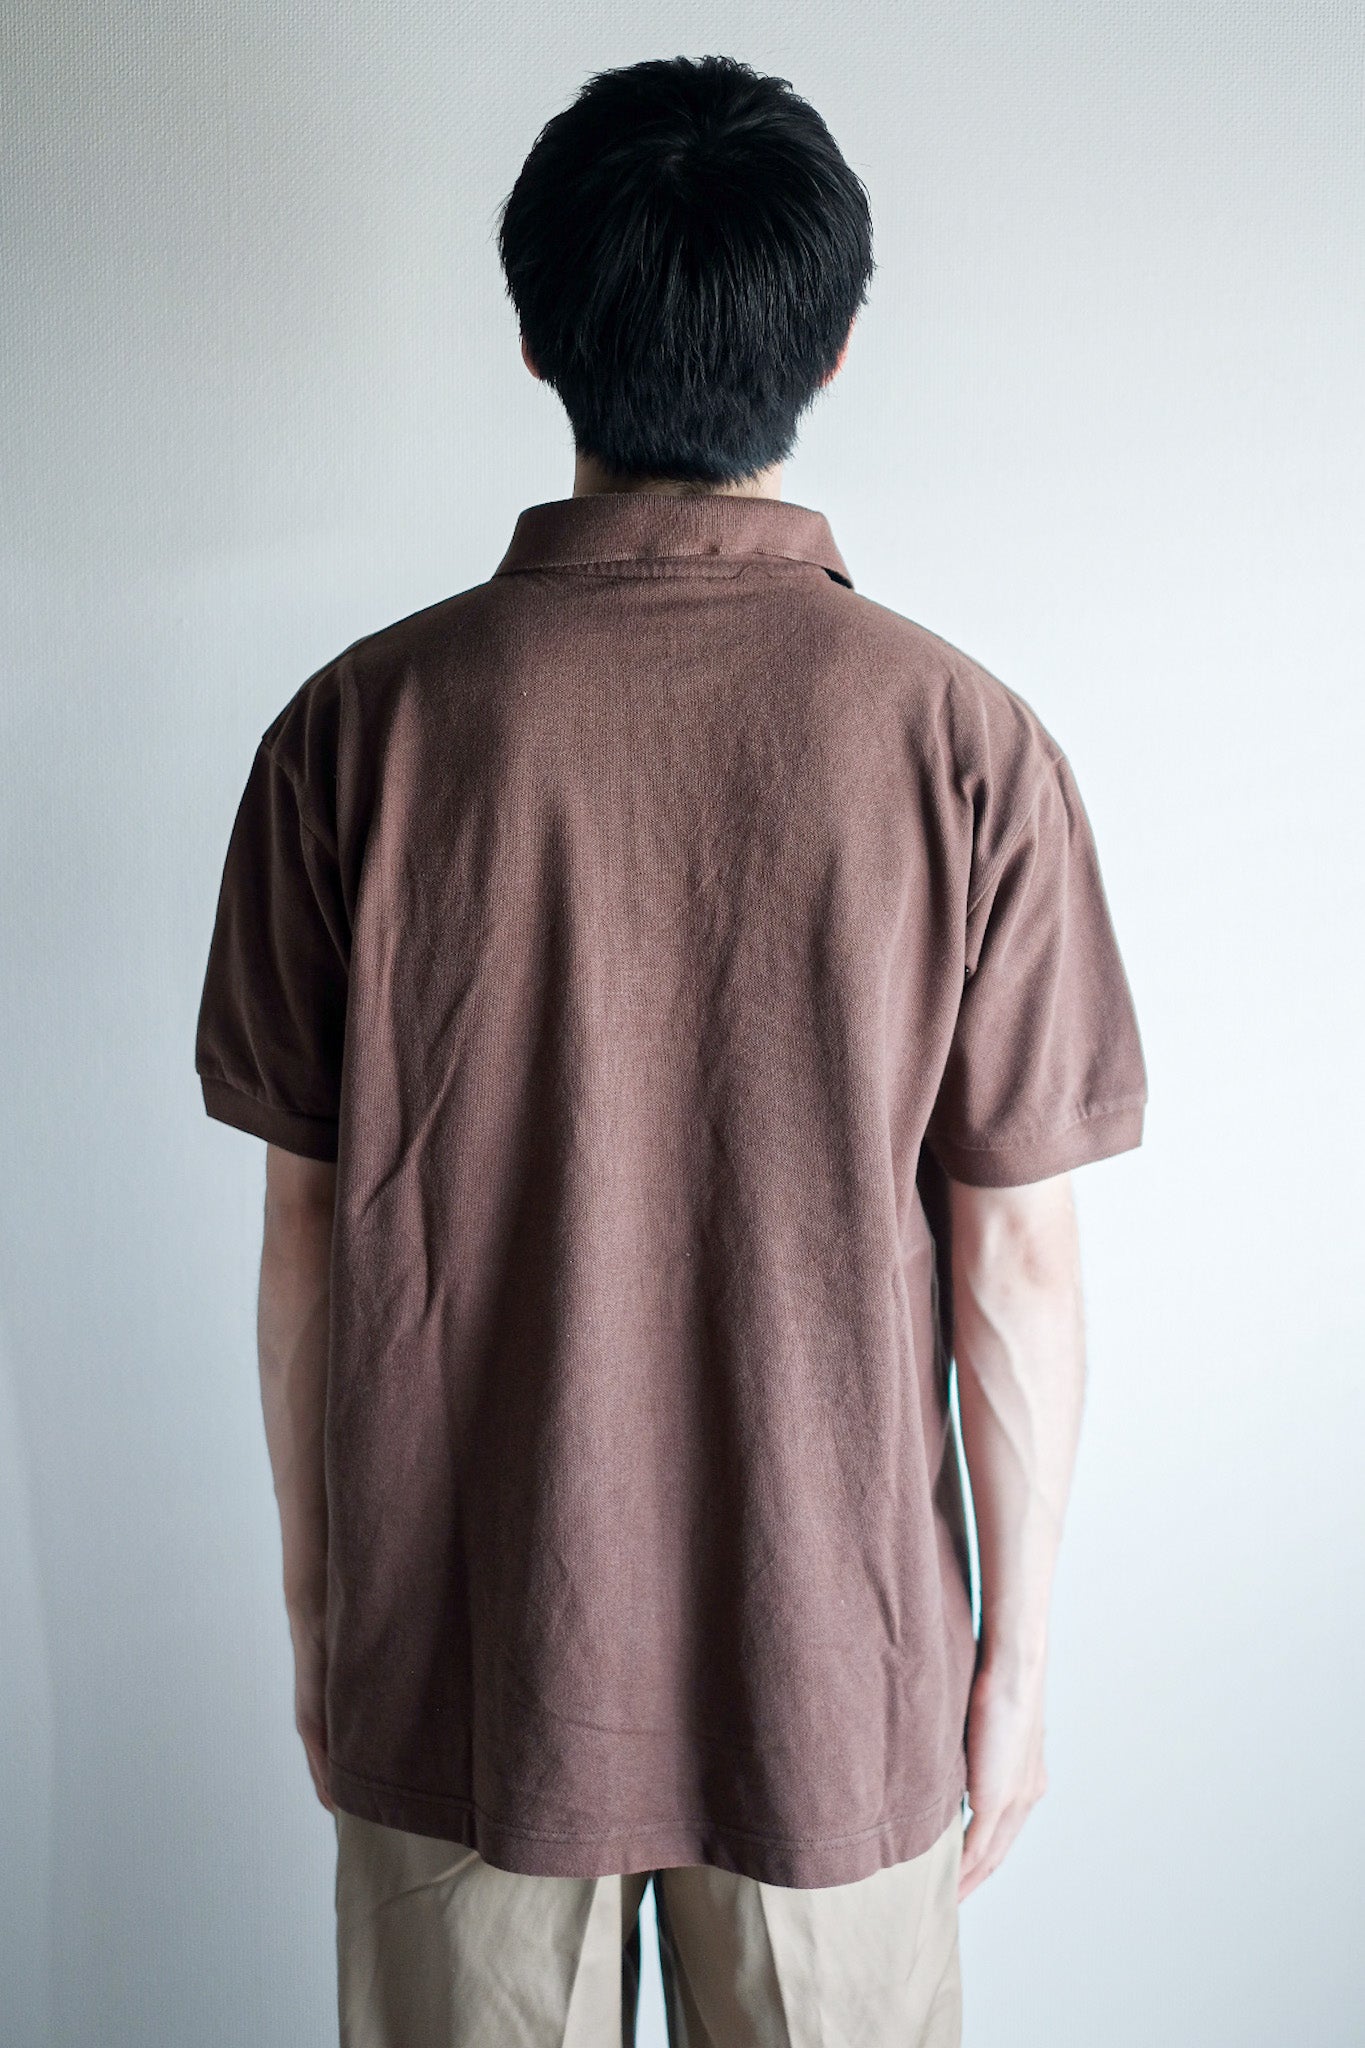 [~ 80 년대] Chemise lacoste s/s 폴로 셔츠 크기 .6 "Brown"